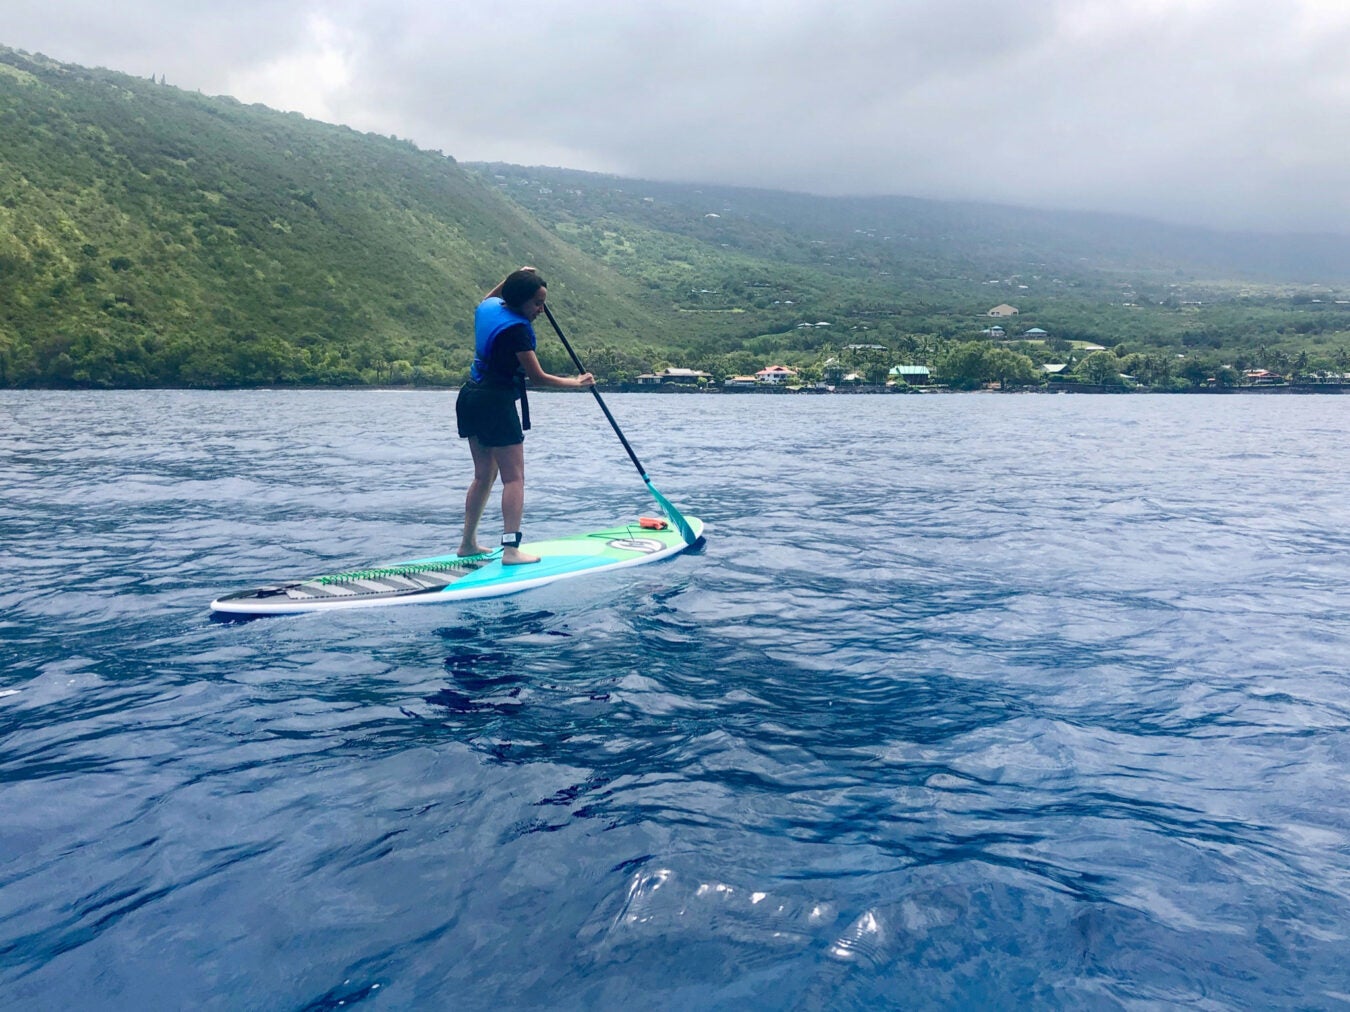 Girma paddle boarding in Hawaii